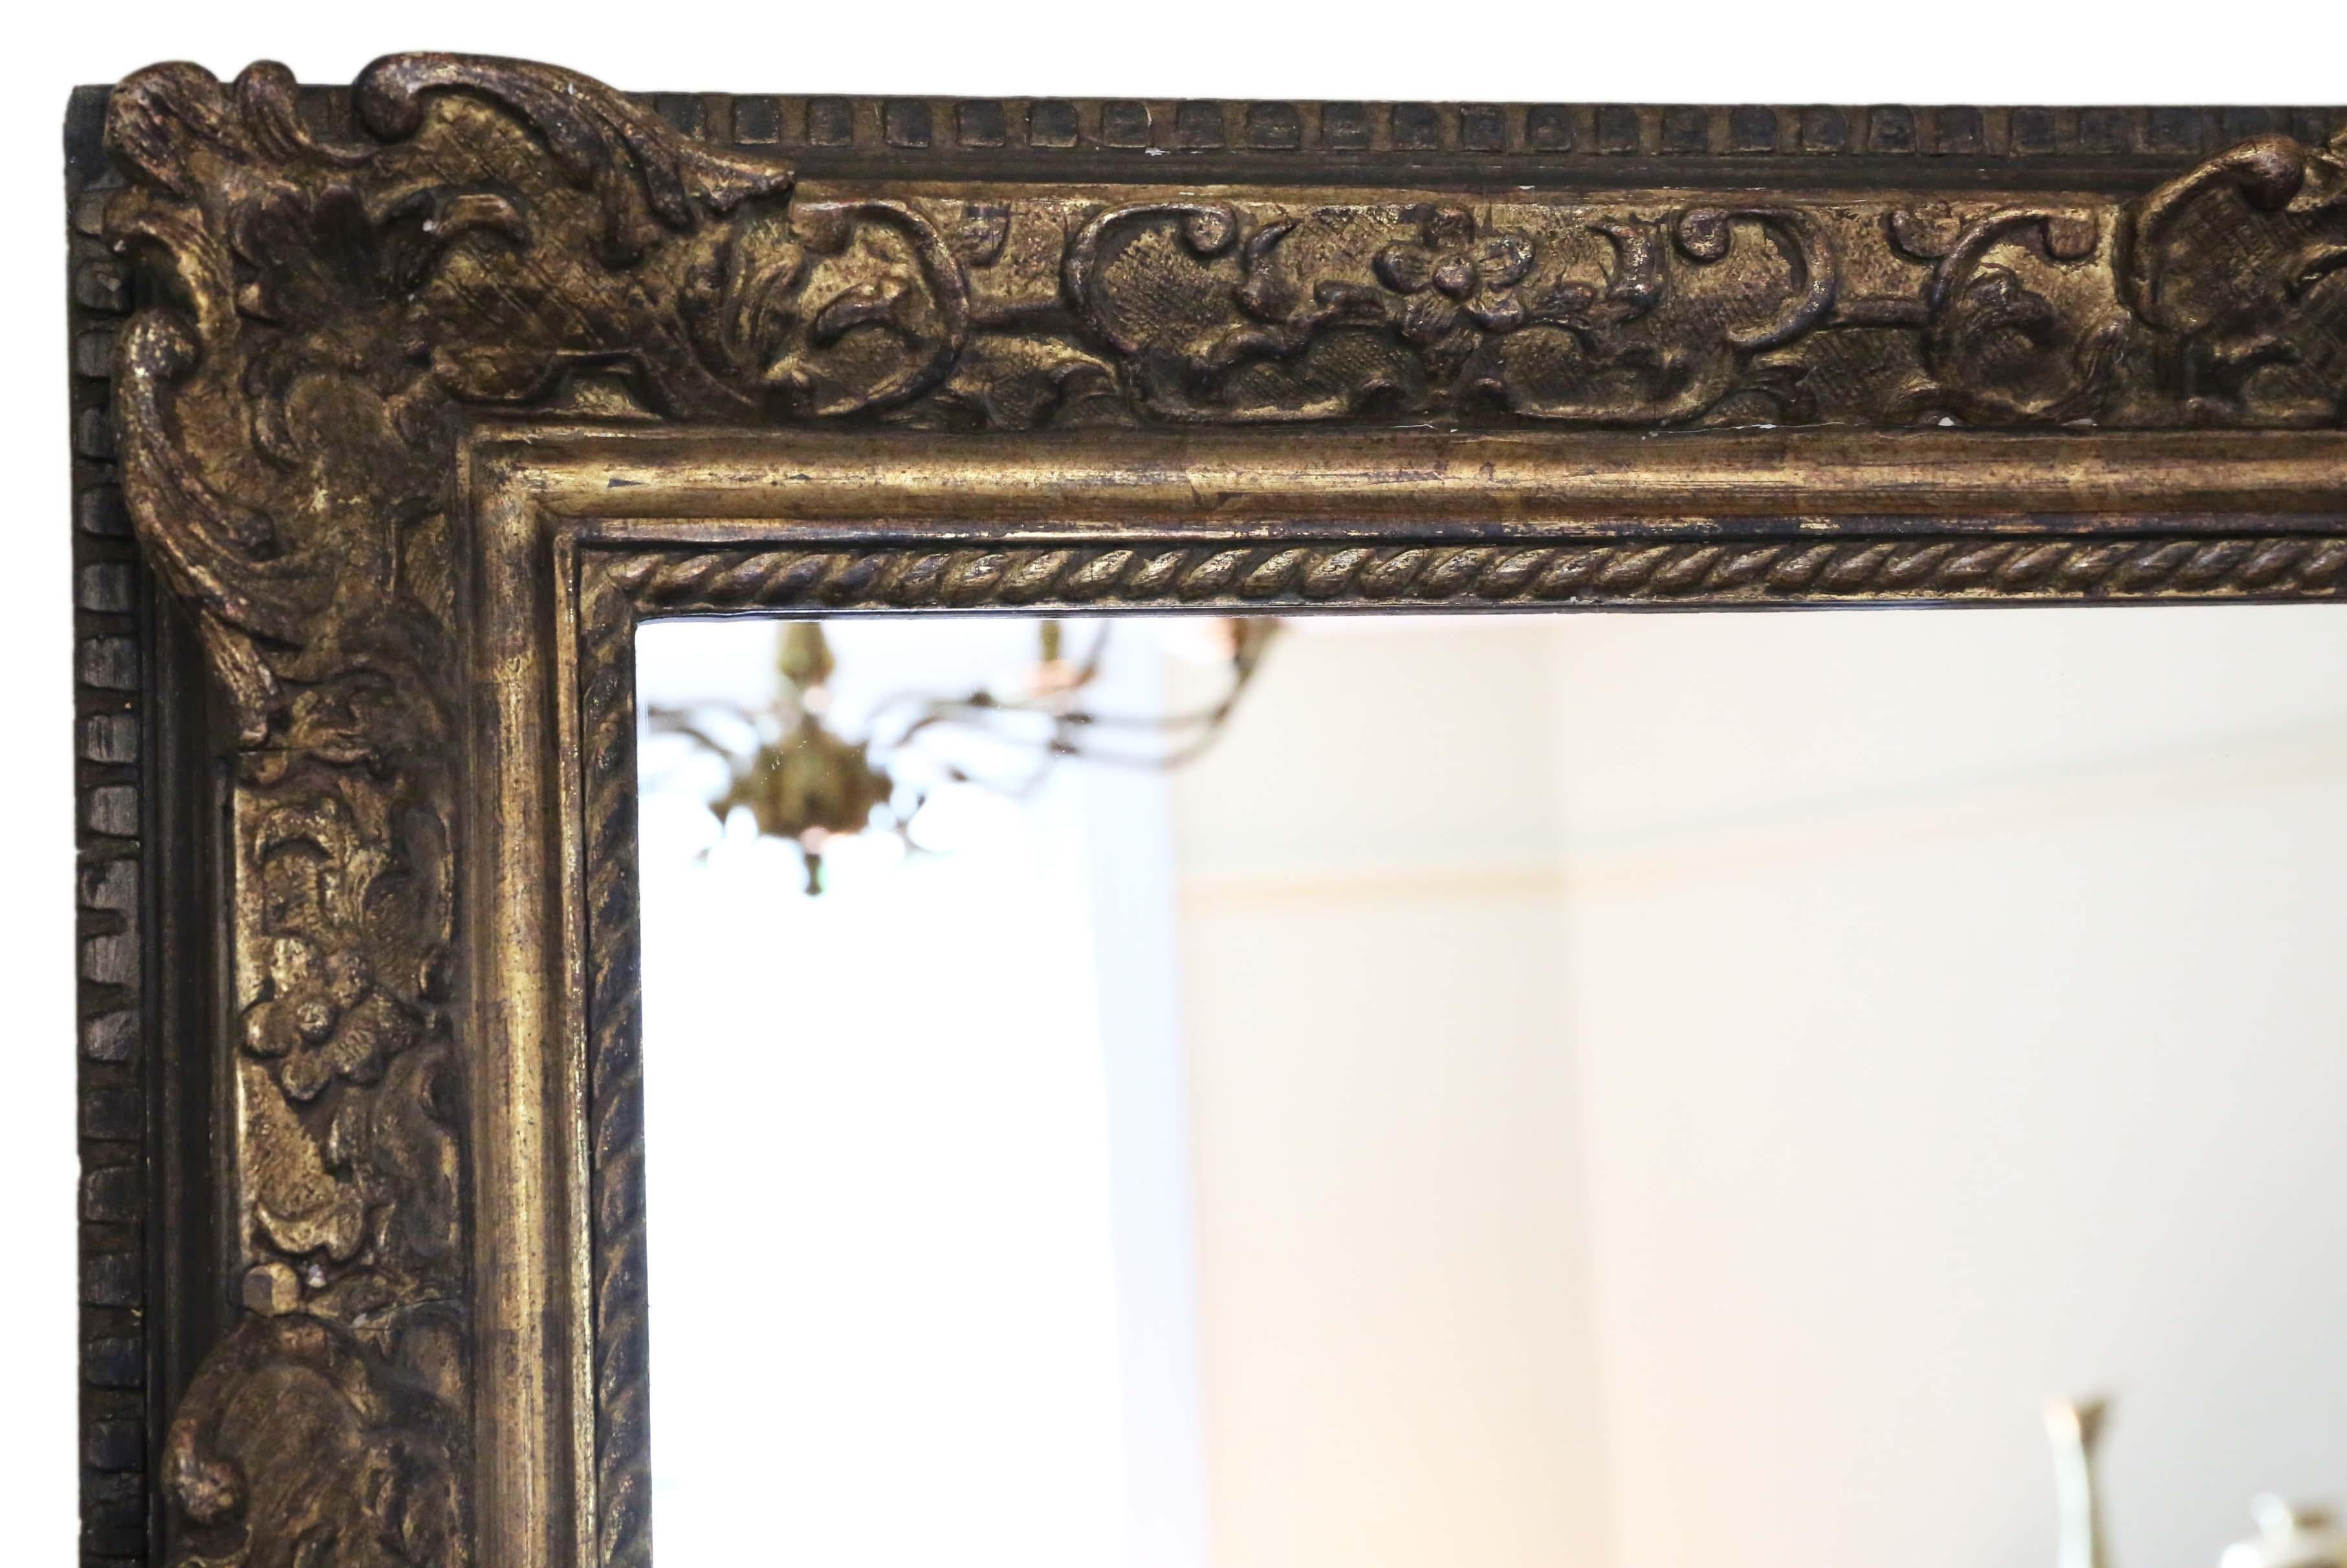 Miroir mural ou trumeau ancien du 19e siècle, de grande qualité et doré. Une belle allure.
Un miroir charmant, qui a de l'âge et du caractère. Joli cadre avec quelques pertes, retouches, refinitions et réparations au fil des ans. Il n'y a pas de